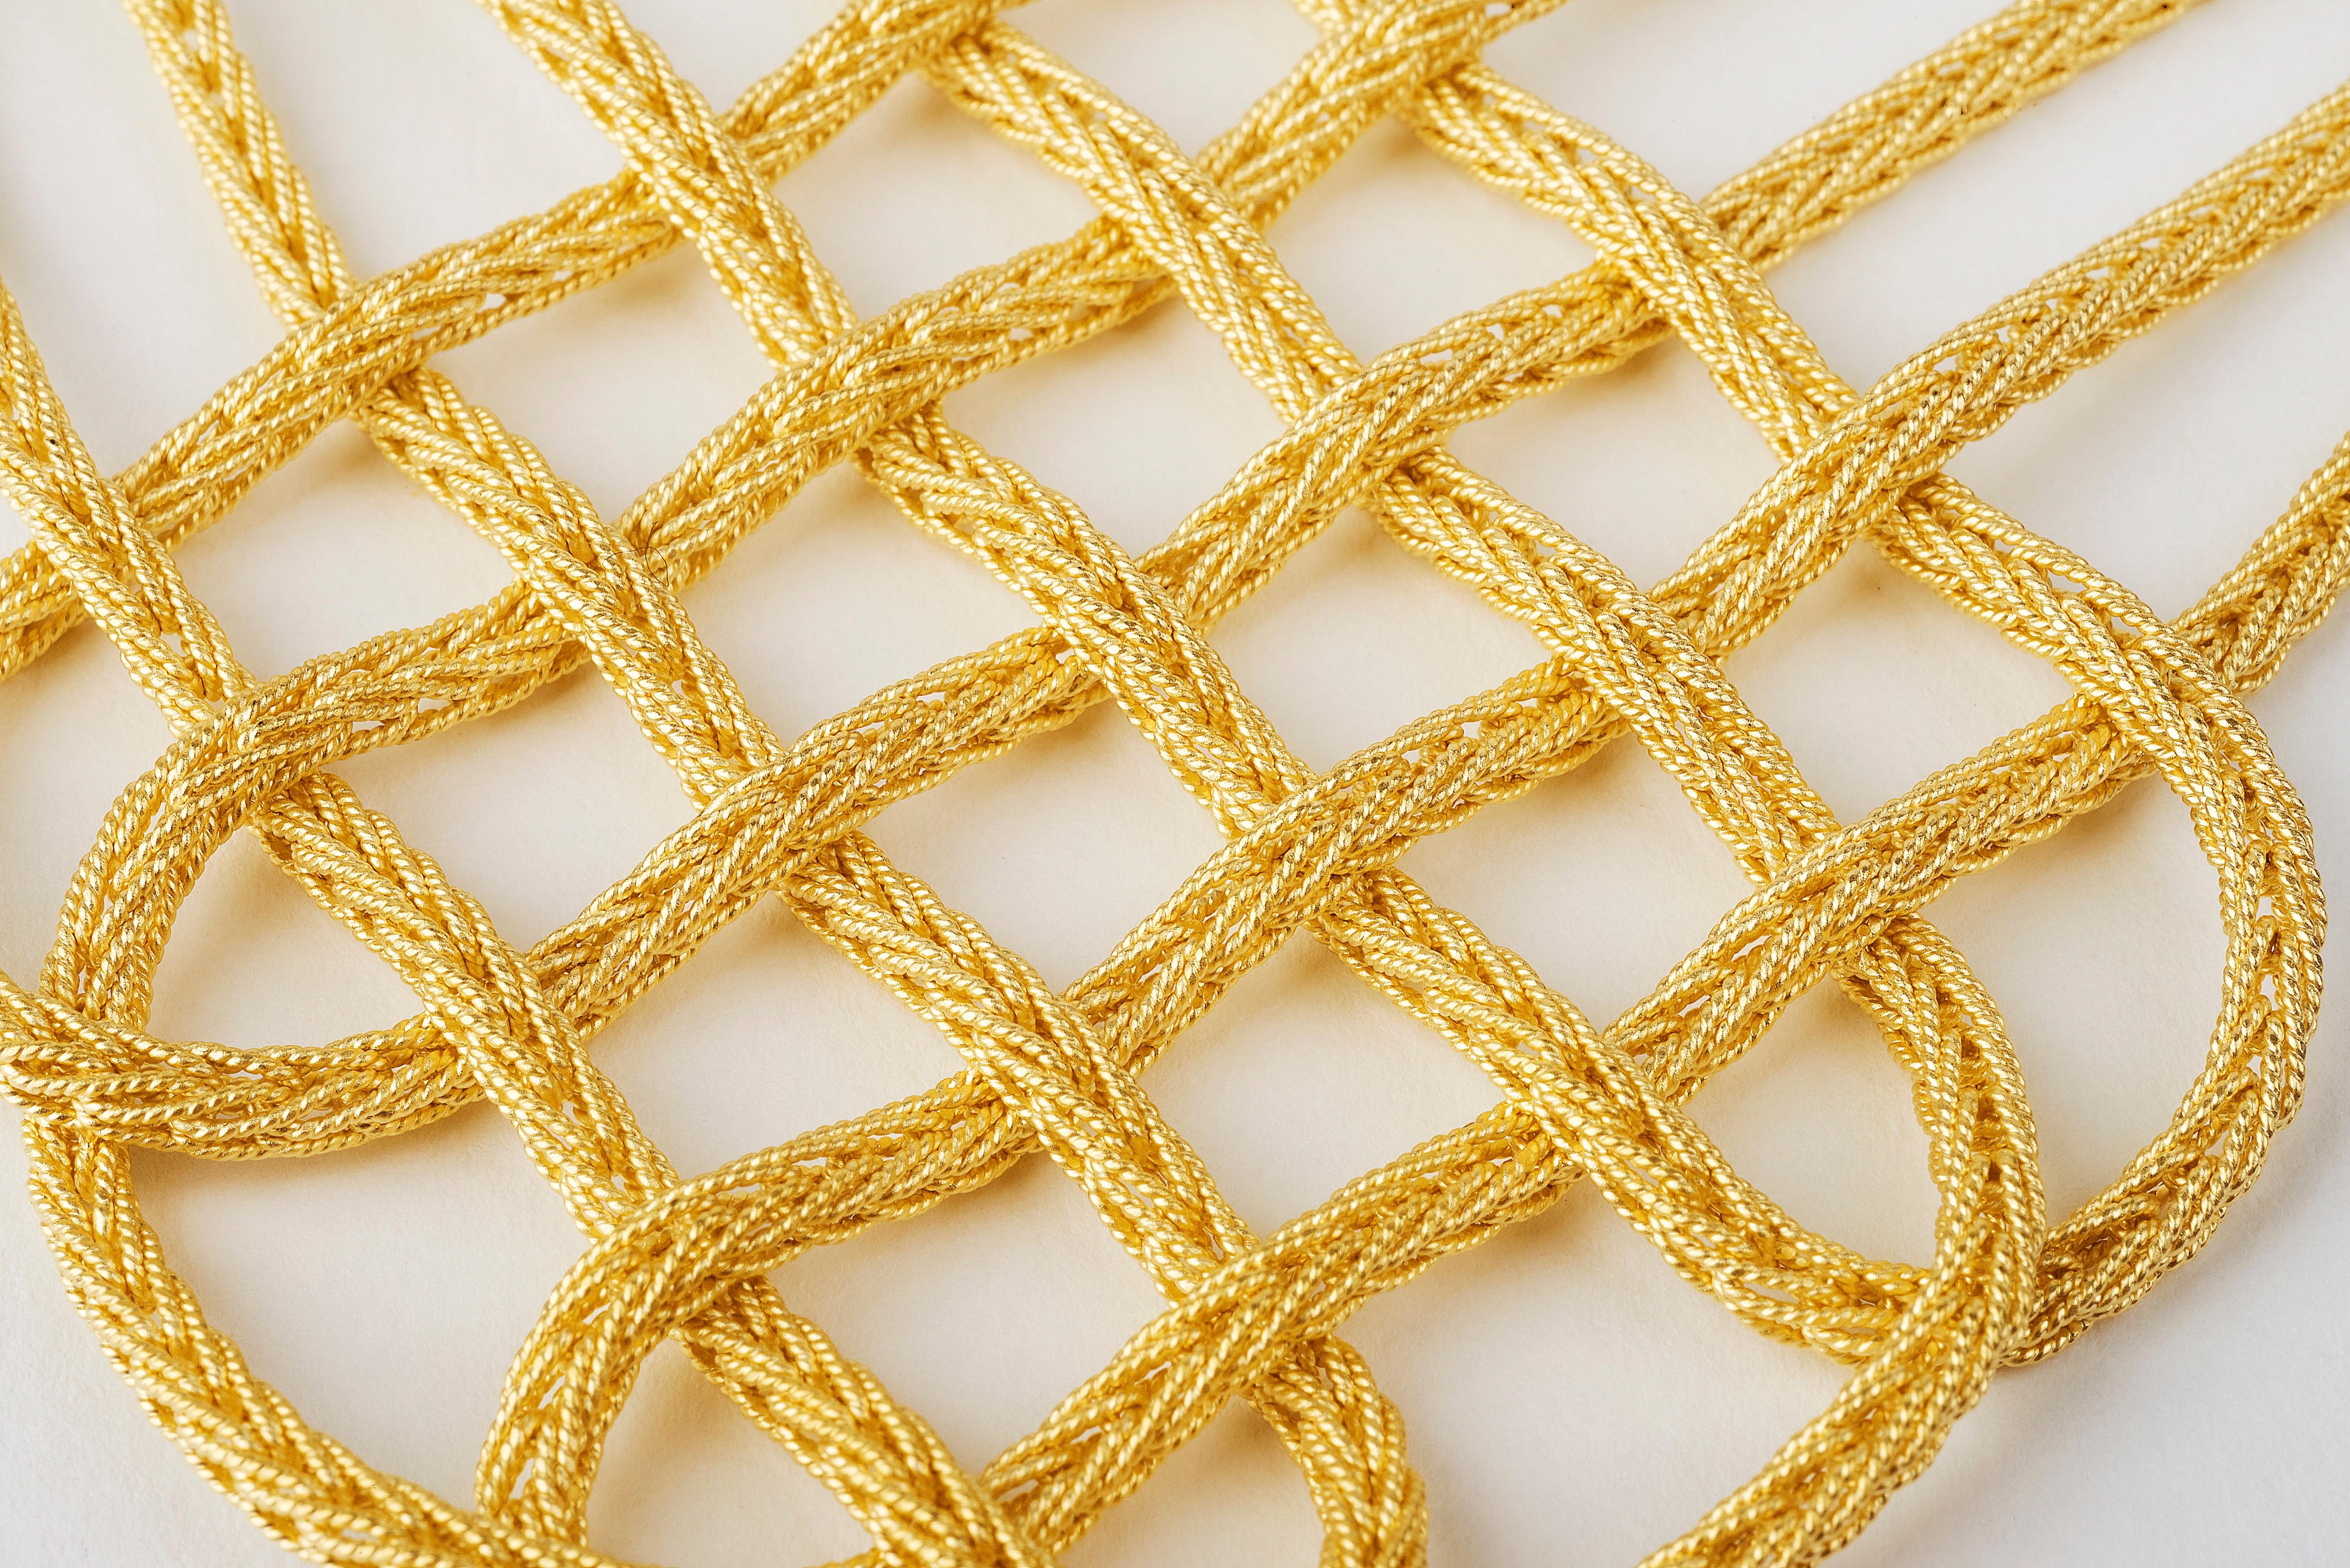 Matthia's & Claire Etruscan 18K Gelbgold Collier geflochtene Statement-Halskette passt perfekt zu einem einfachen Outfit für einen Abend oder ein besonderes Ereignis. Die Collection'S Etruscan ist ein charakteristisches Element der Linie Matthia's &